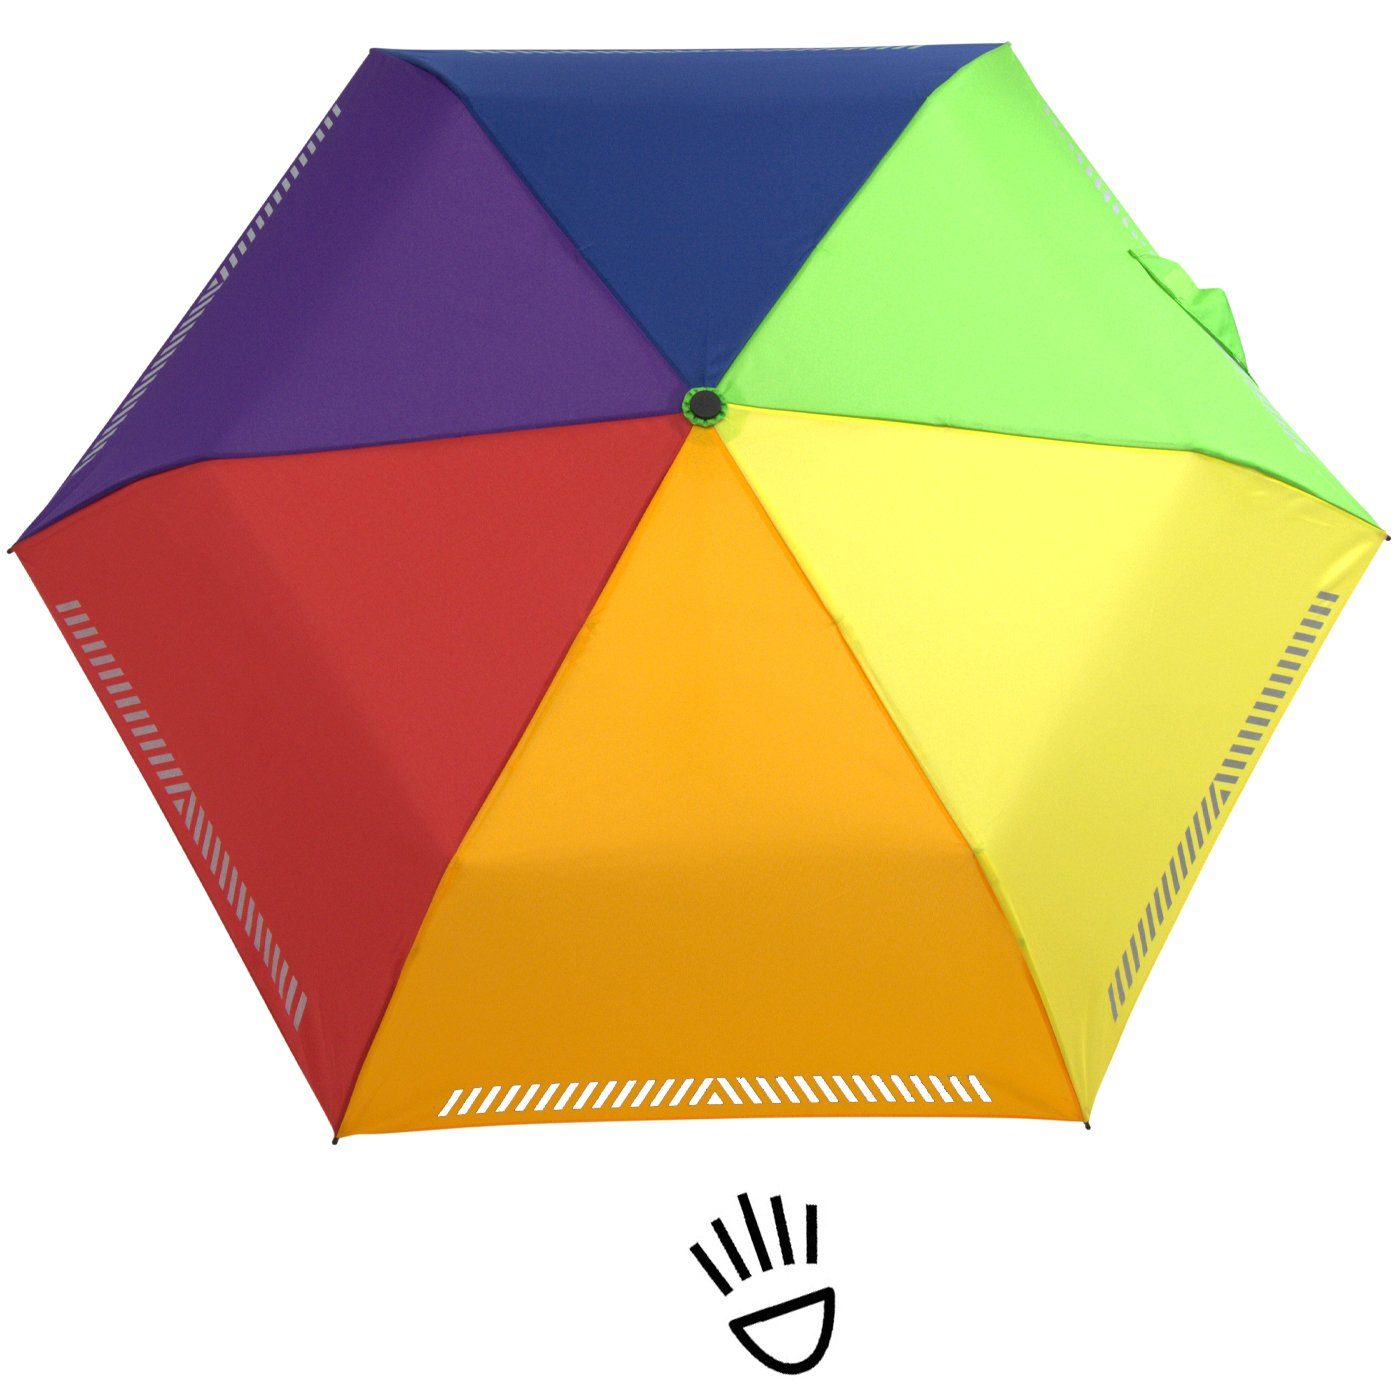 iX-brella Regenbogen - reflektierend, Sicherheit Auf-Zu-Automatik, Reflex-Streifen Taschenregenschirm Kinderschirm mit durch